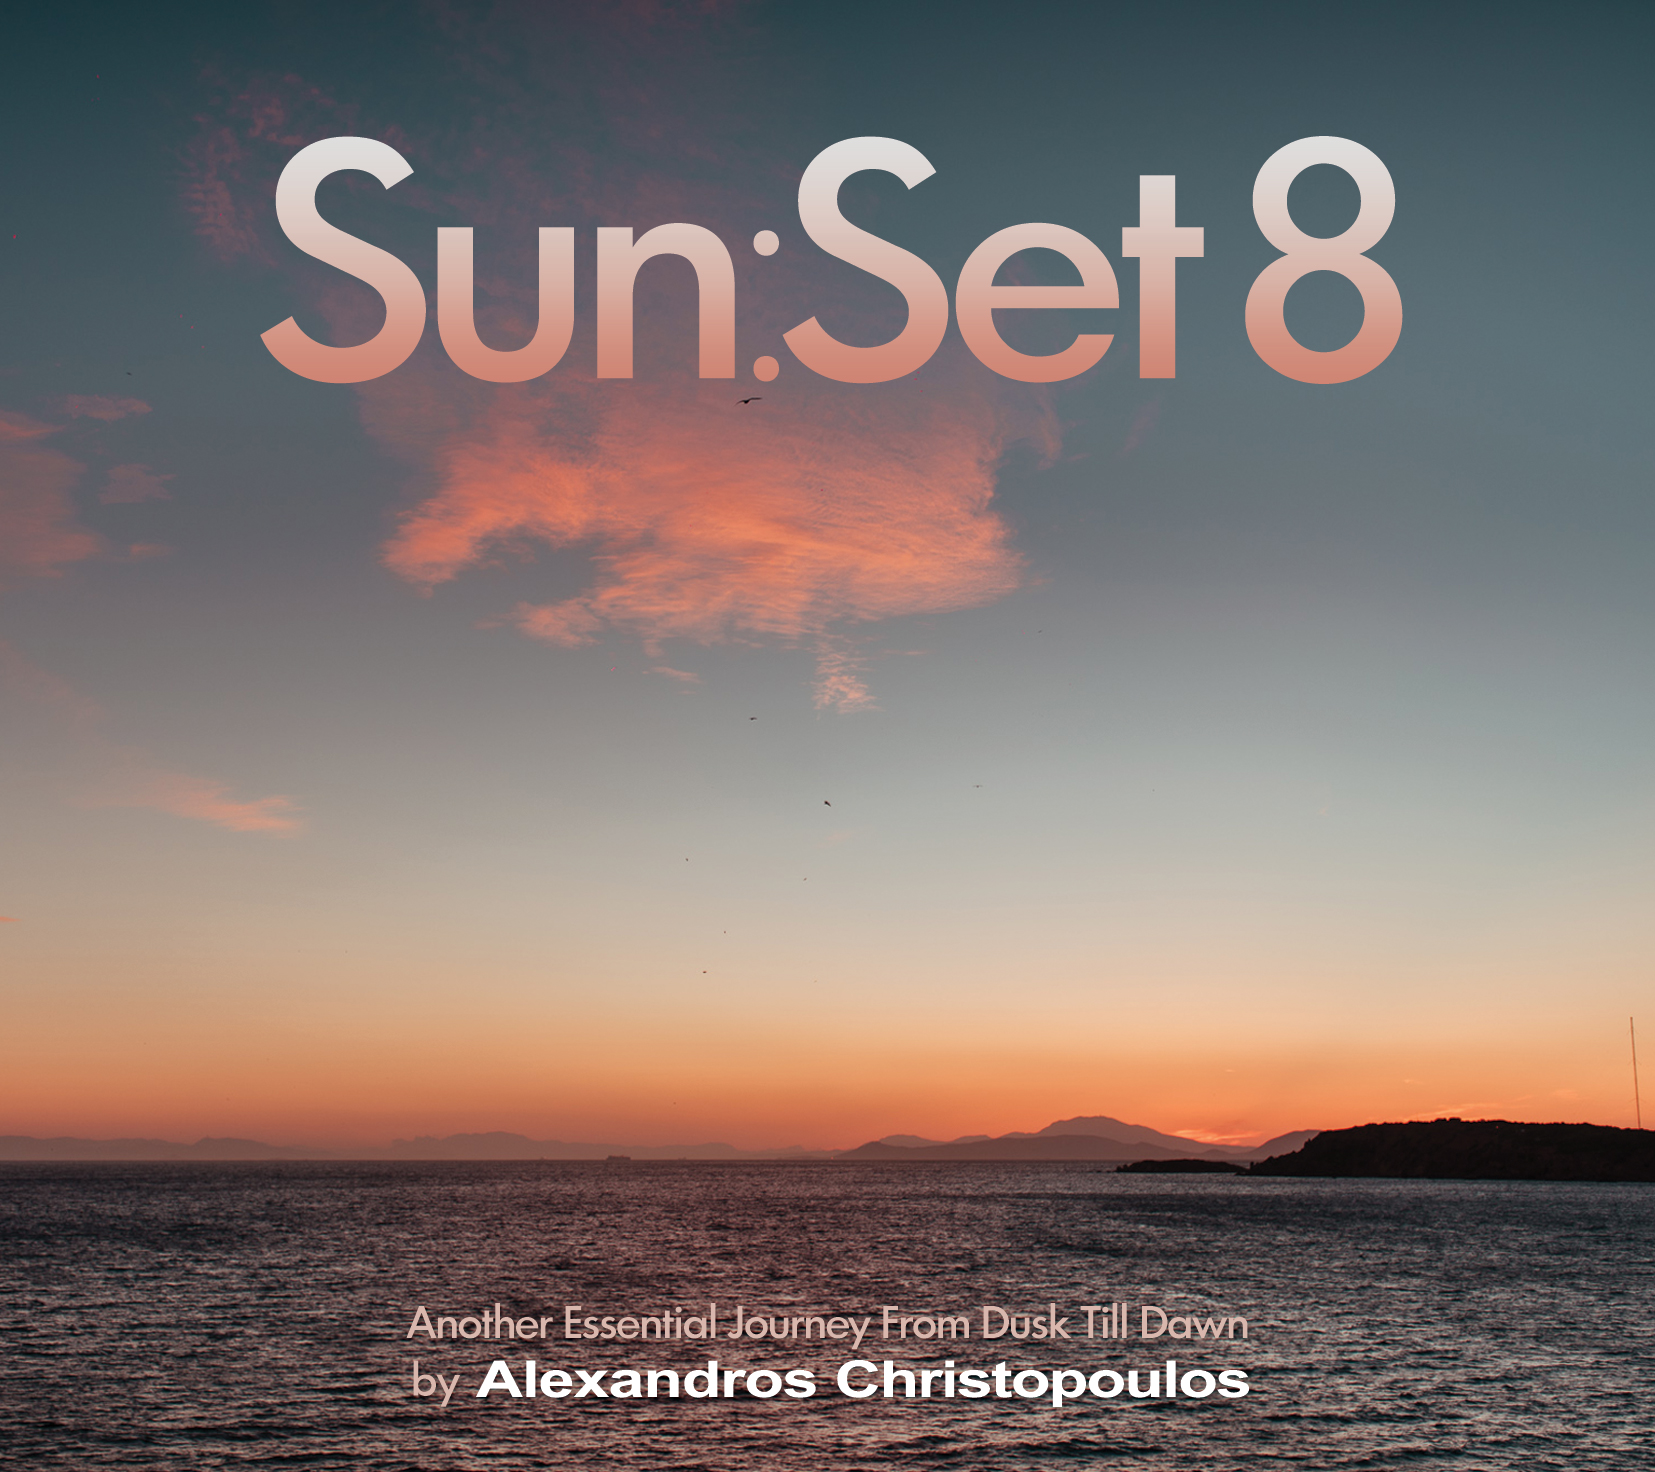 Sun:Set 8